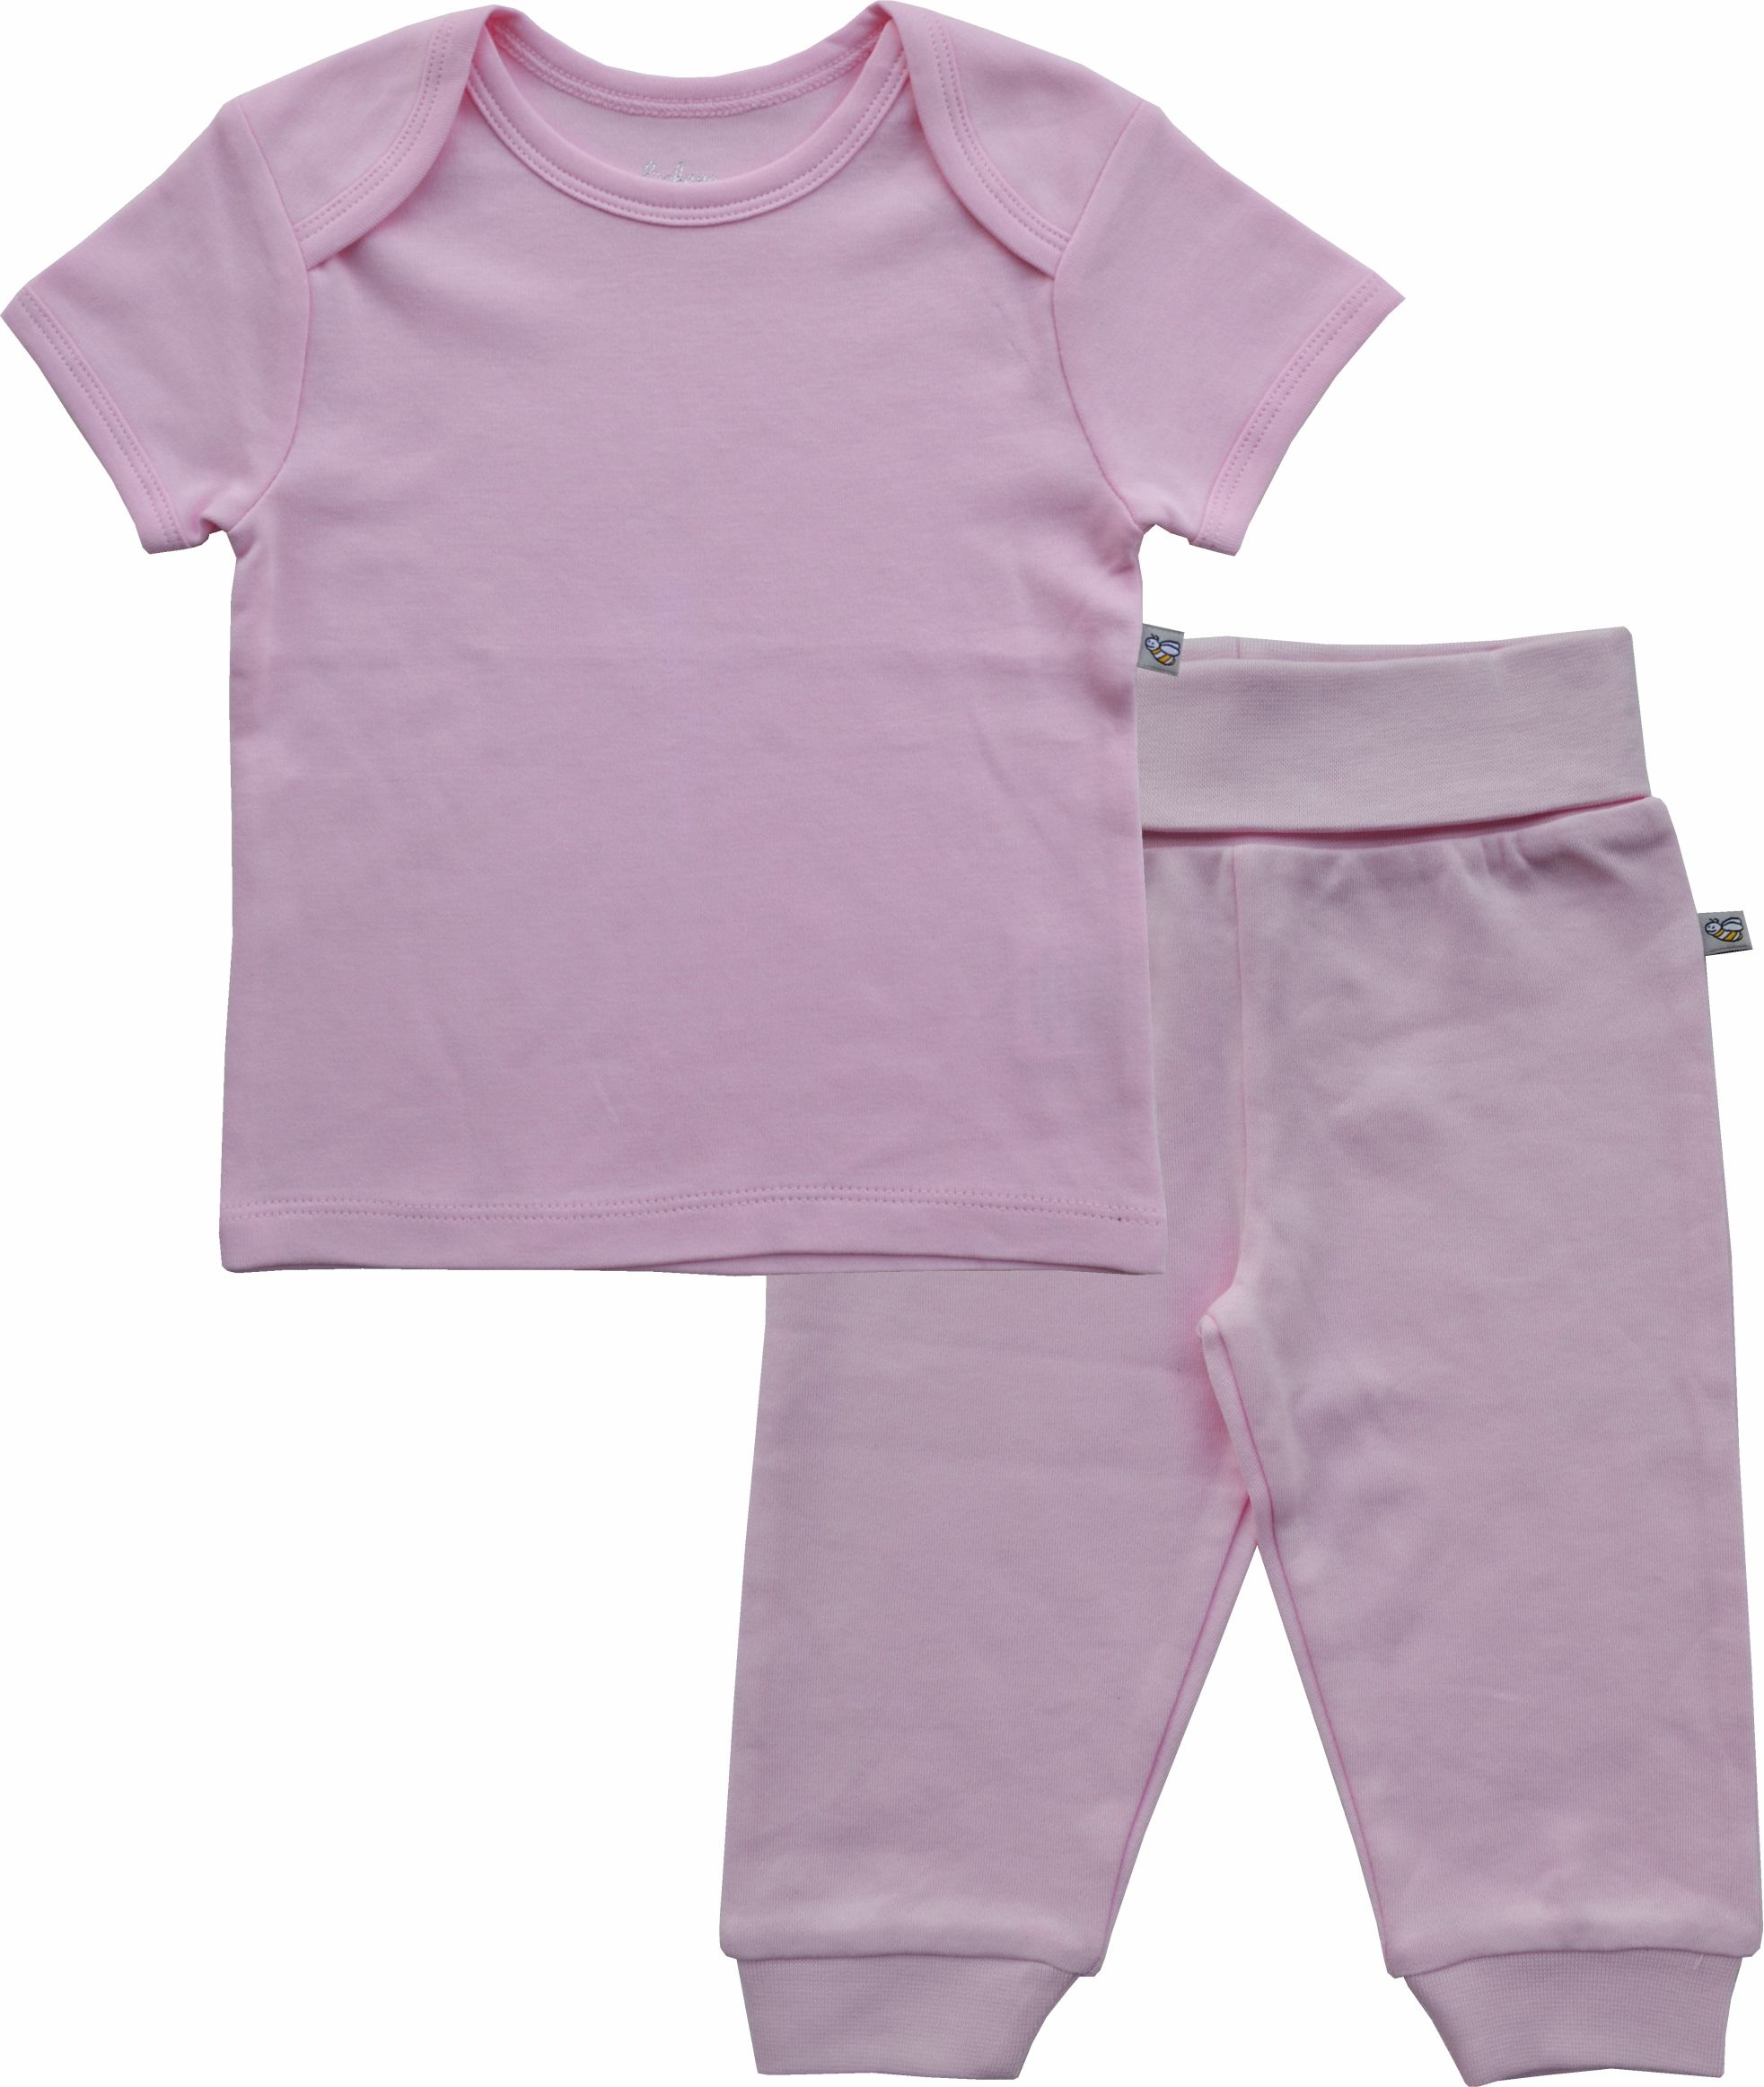 Pink Short Sleeve Top + Pant Set (100% Cotton Interlock Biowash)